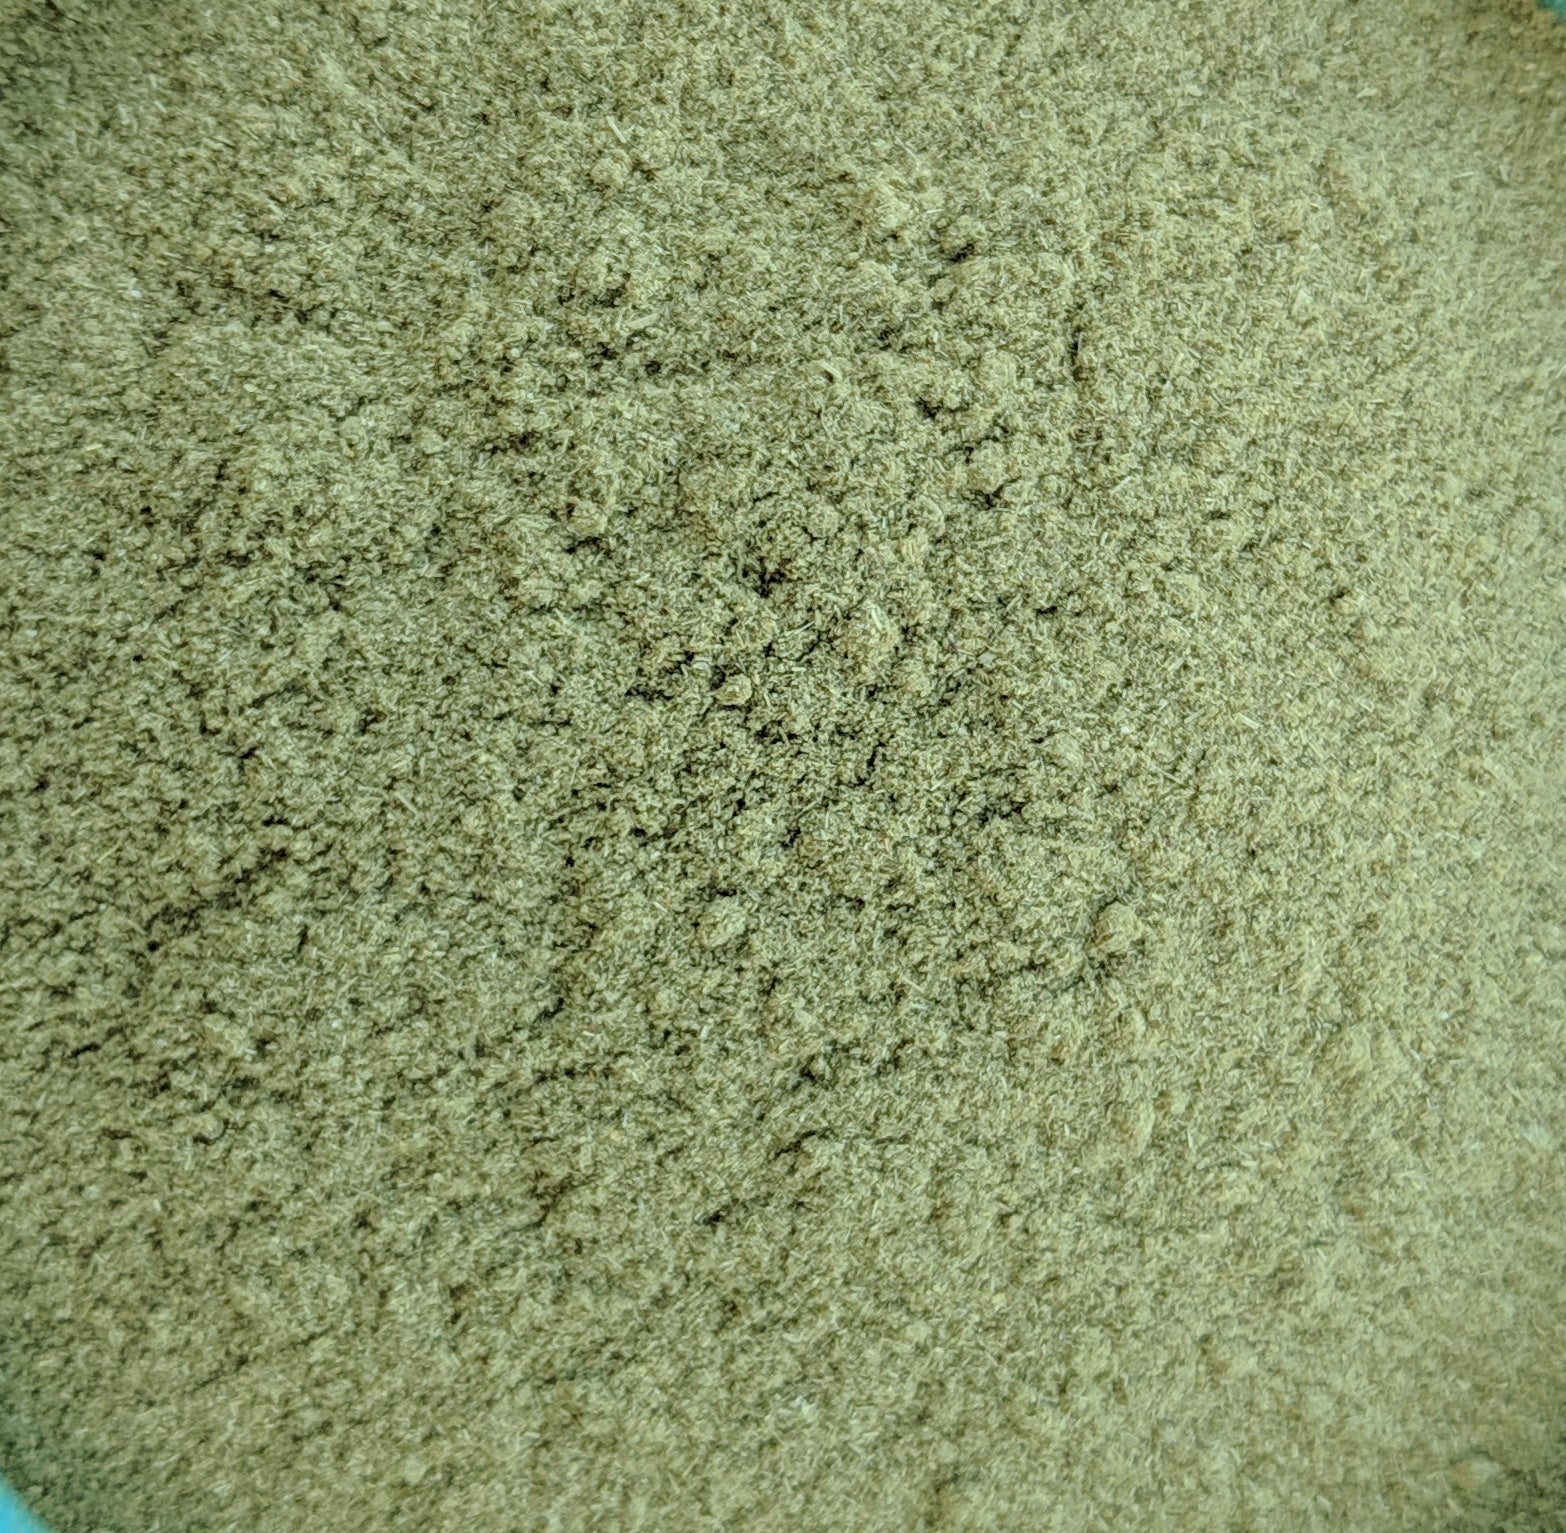 Weizengraspulver (Triticum Aestivum)